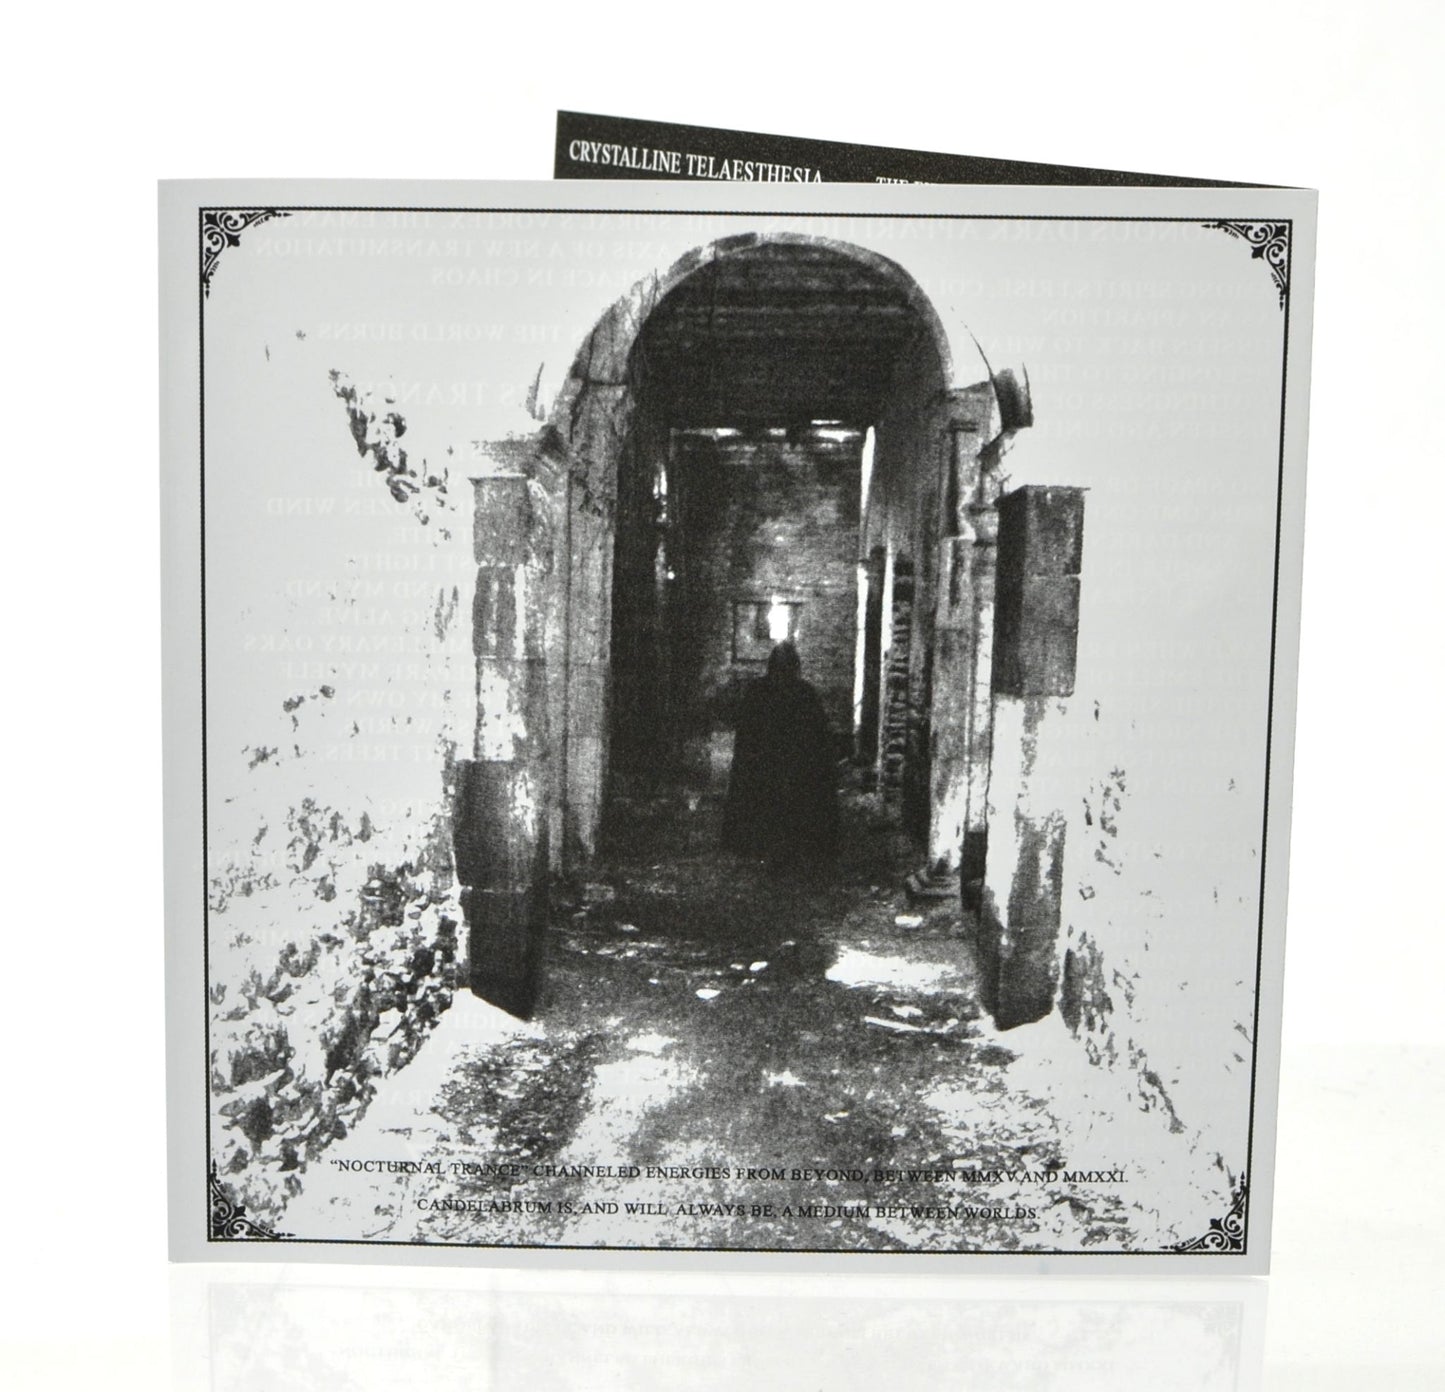 CANDELABRUM - Nocturnal Trance (CD)